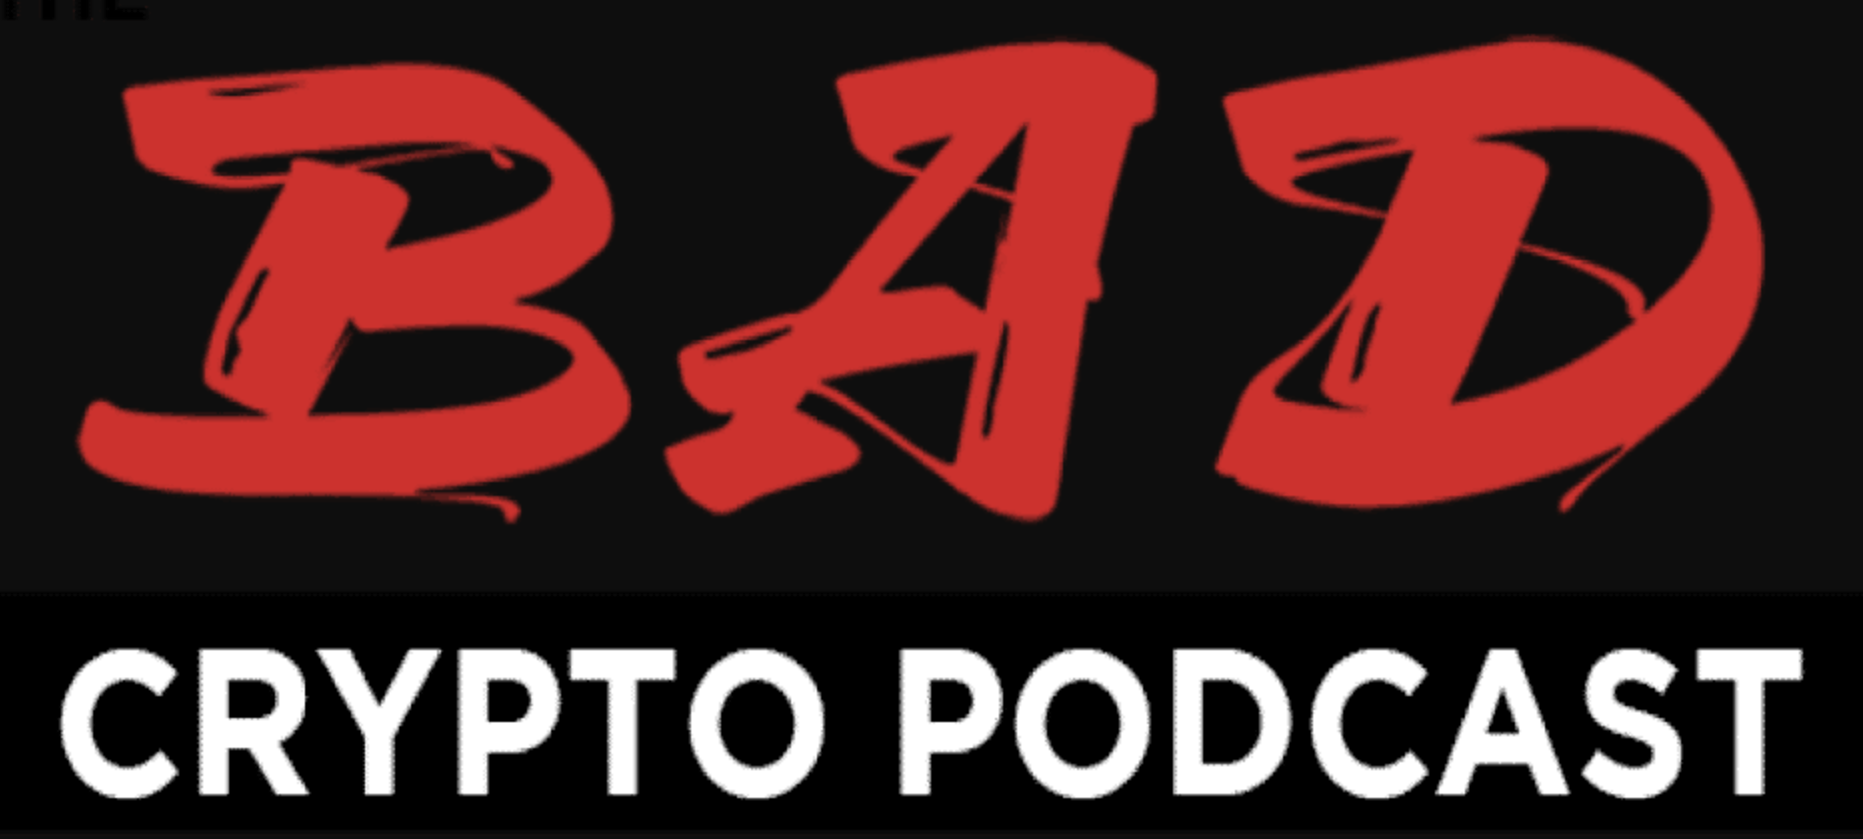 Bad-Crypto-Podcast-Raw-Black-copy